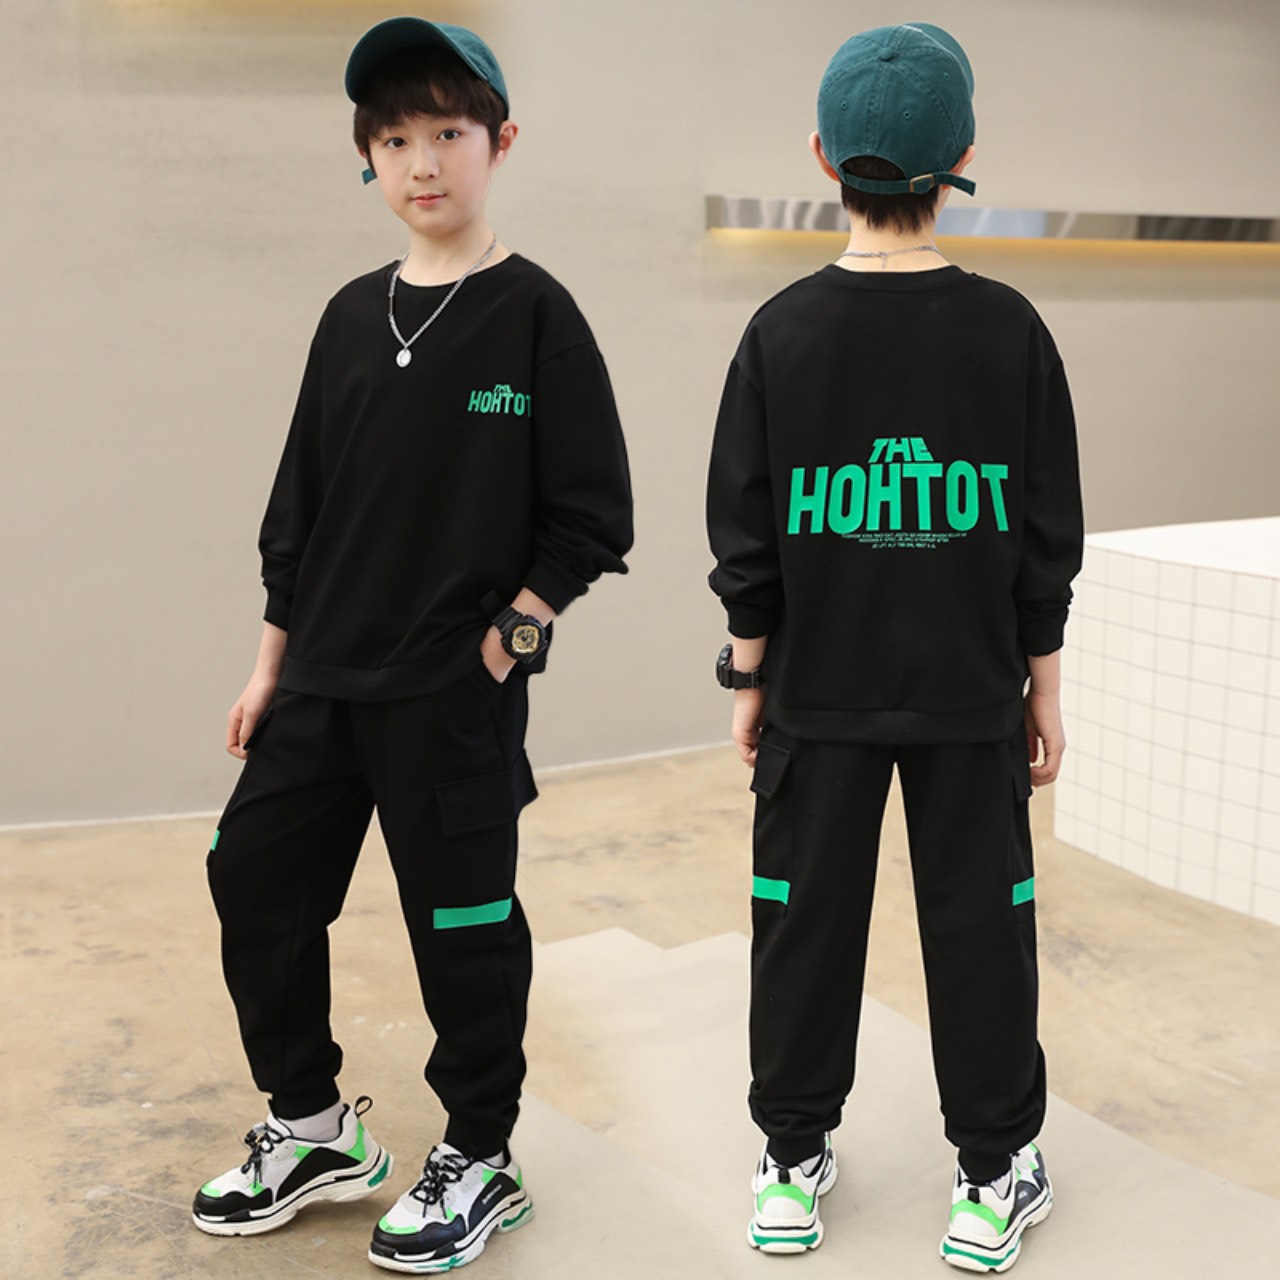 Bộ quần áo thu đông trẻ em 14-45kg (4-14 tuổi) mẫu HOHTOT. Thiết kế năng động, cá tính